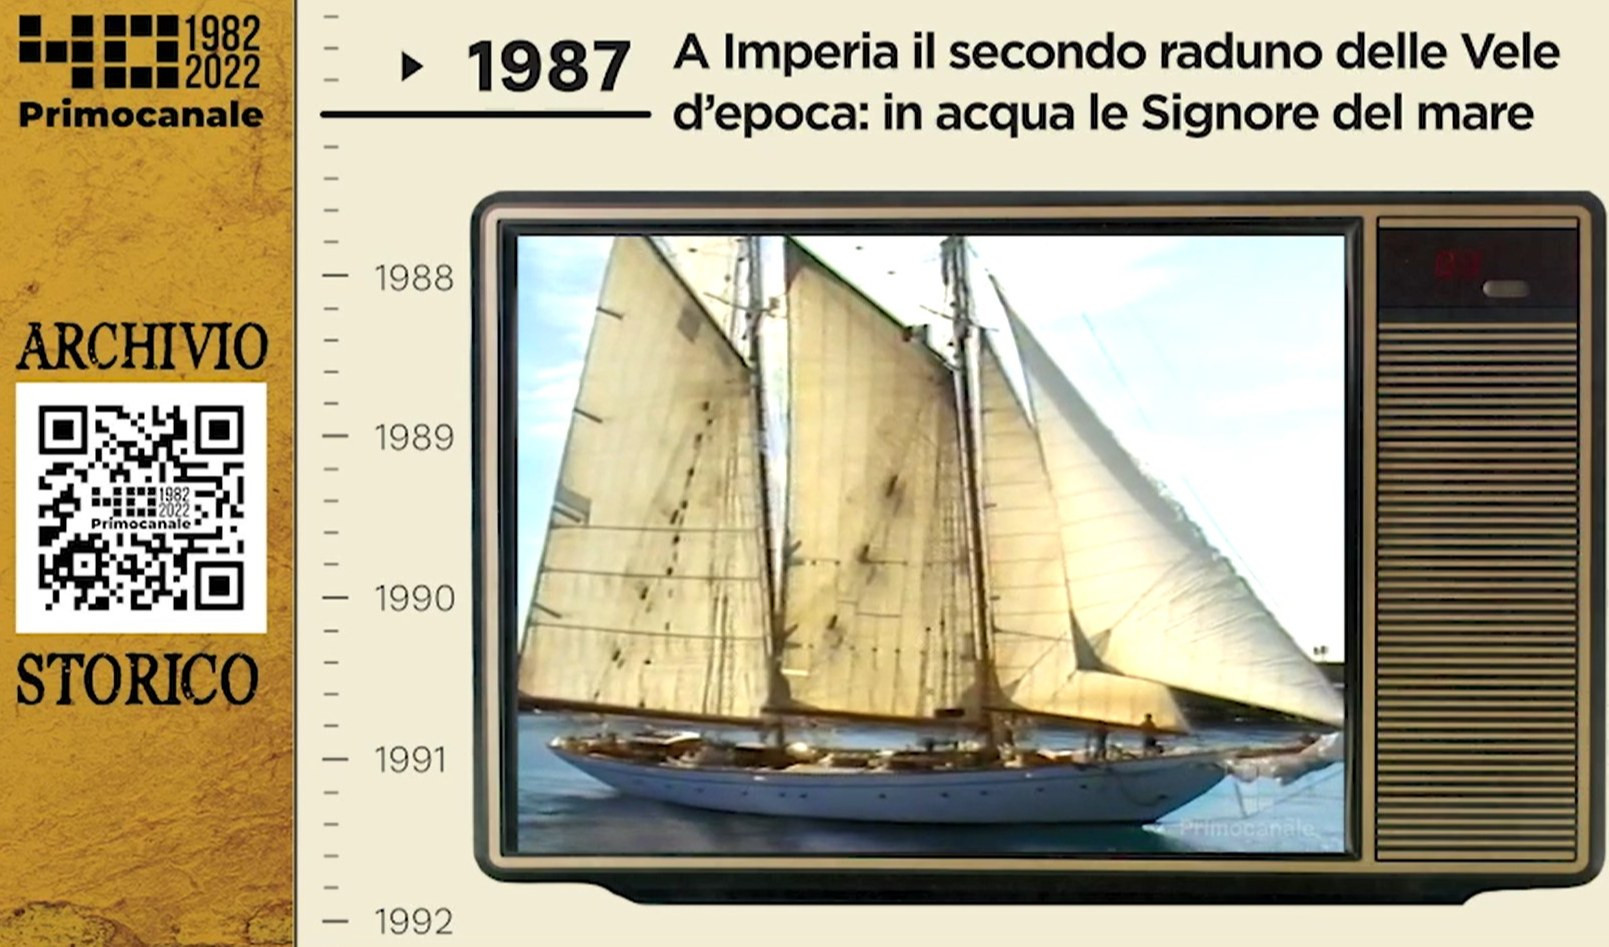 Dall'archivio storico di Primocanale, 1987: le vele d'epoca a Imperia